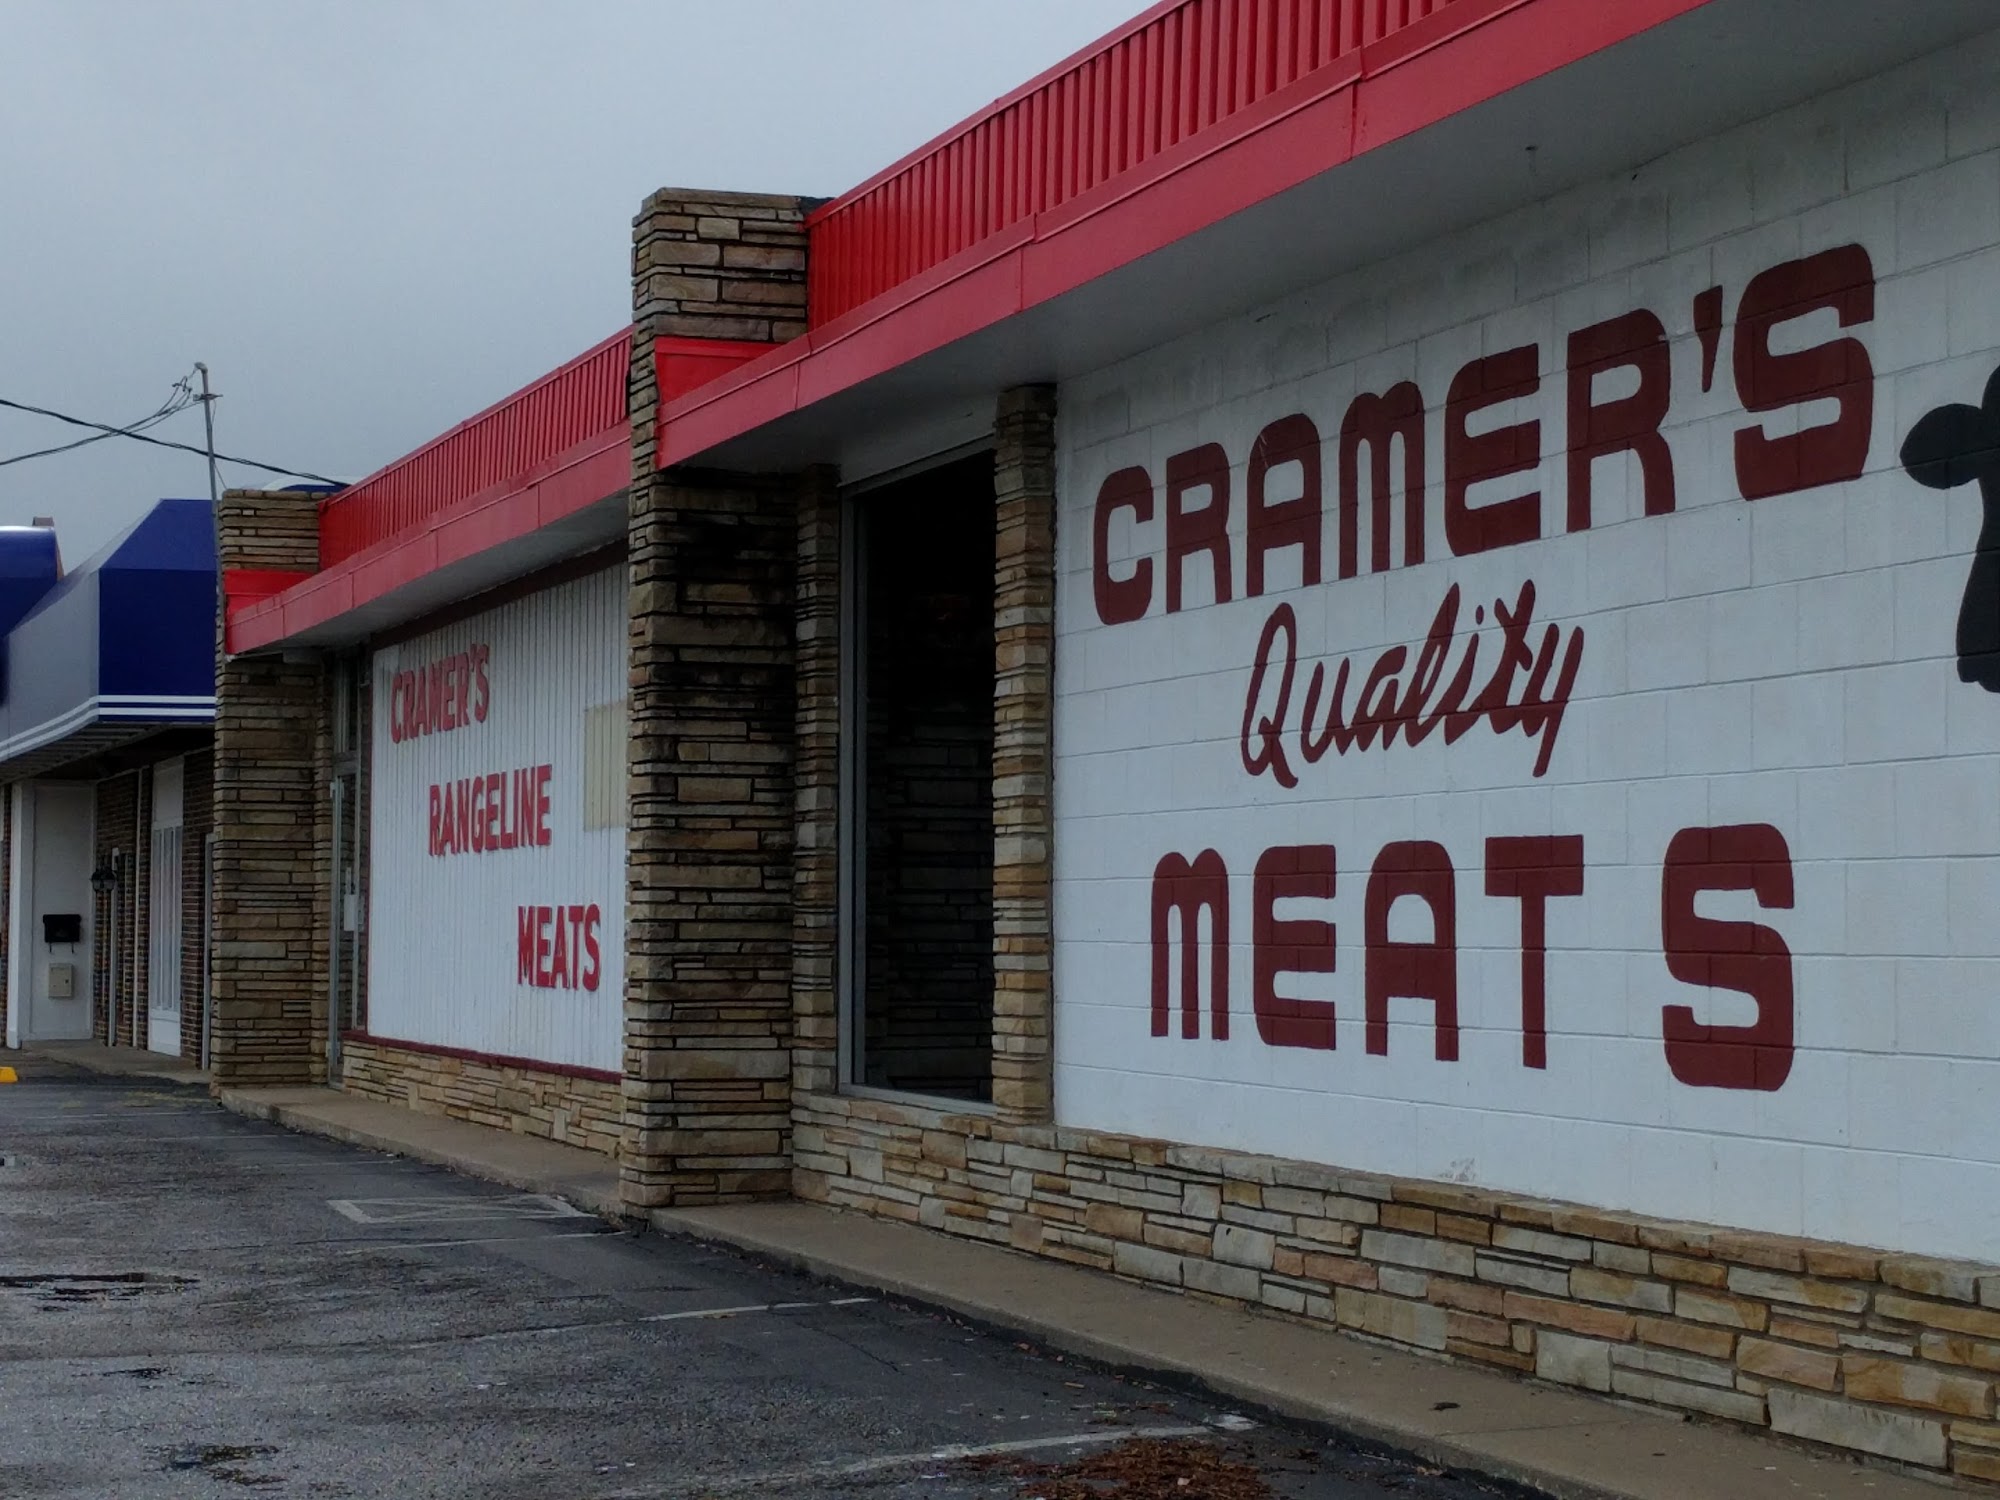 Cramers's Rangeline Meat Co